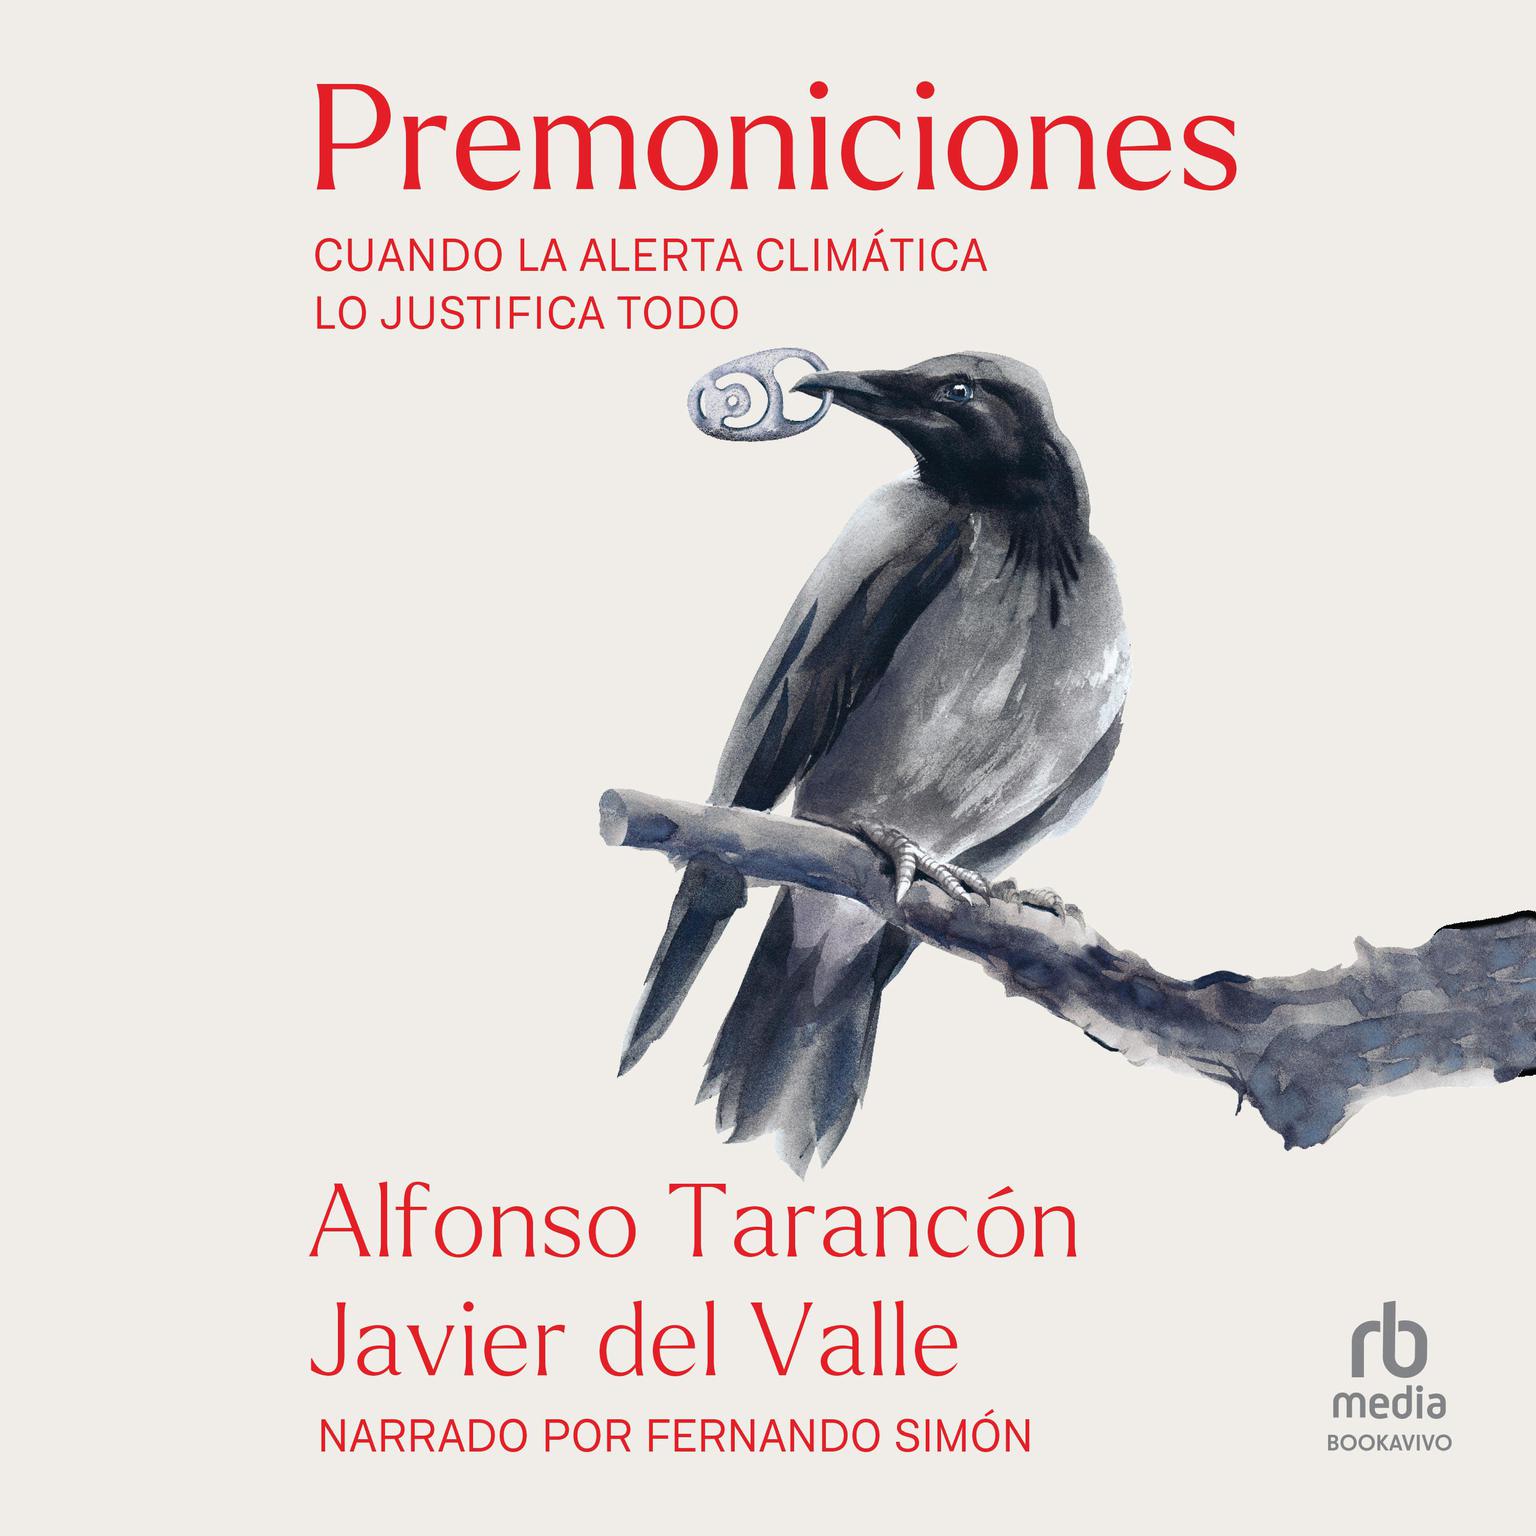 Premoniciones: Cuando la alerta climática lo  justifica todo (When the Climate  Alert Justifies Everything) Audiobook, by Alfonso Tarancón